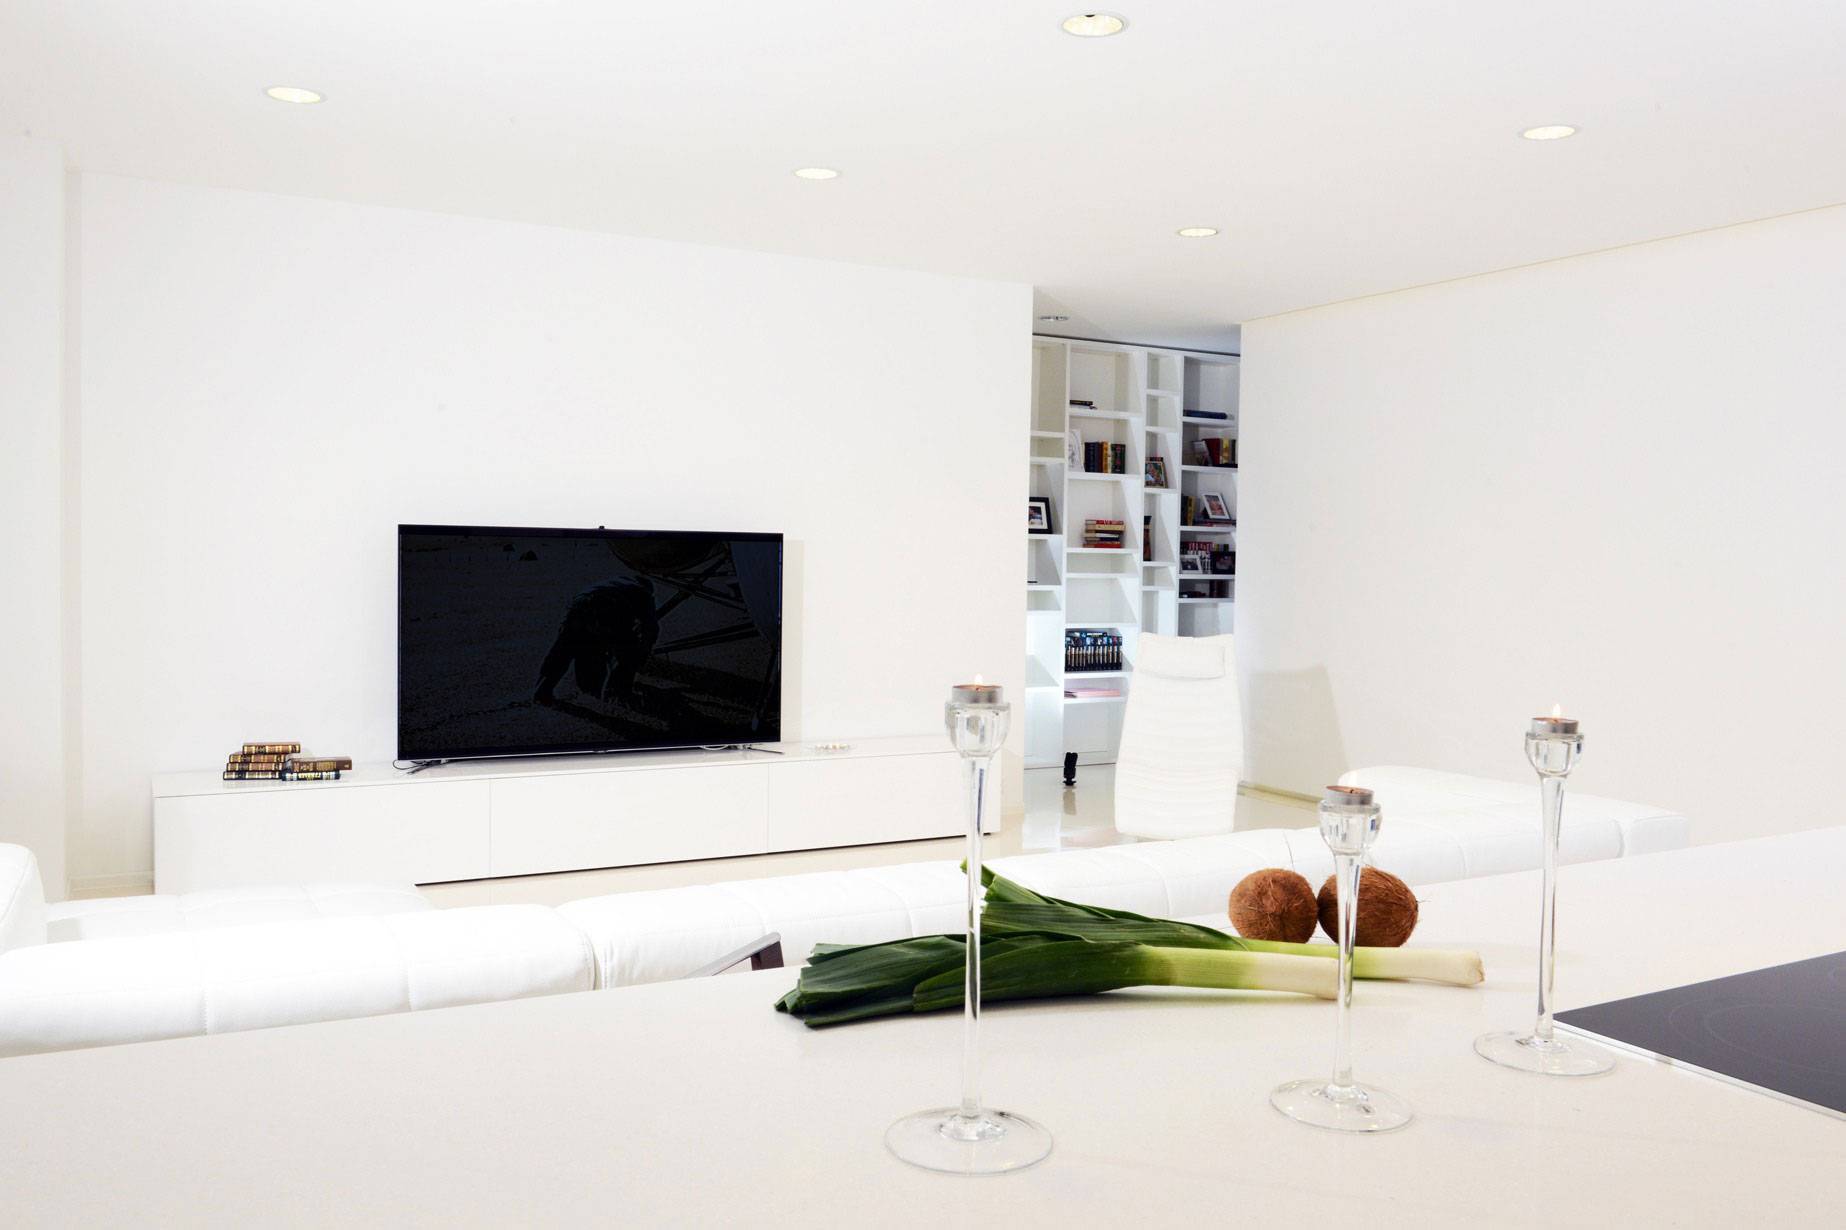 Белые двери в интерьере квартиры: реальные фото примеров использования